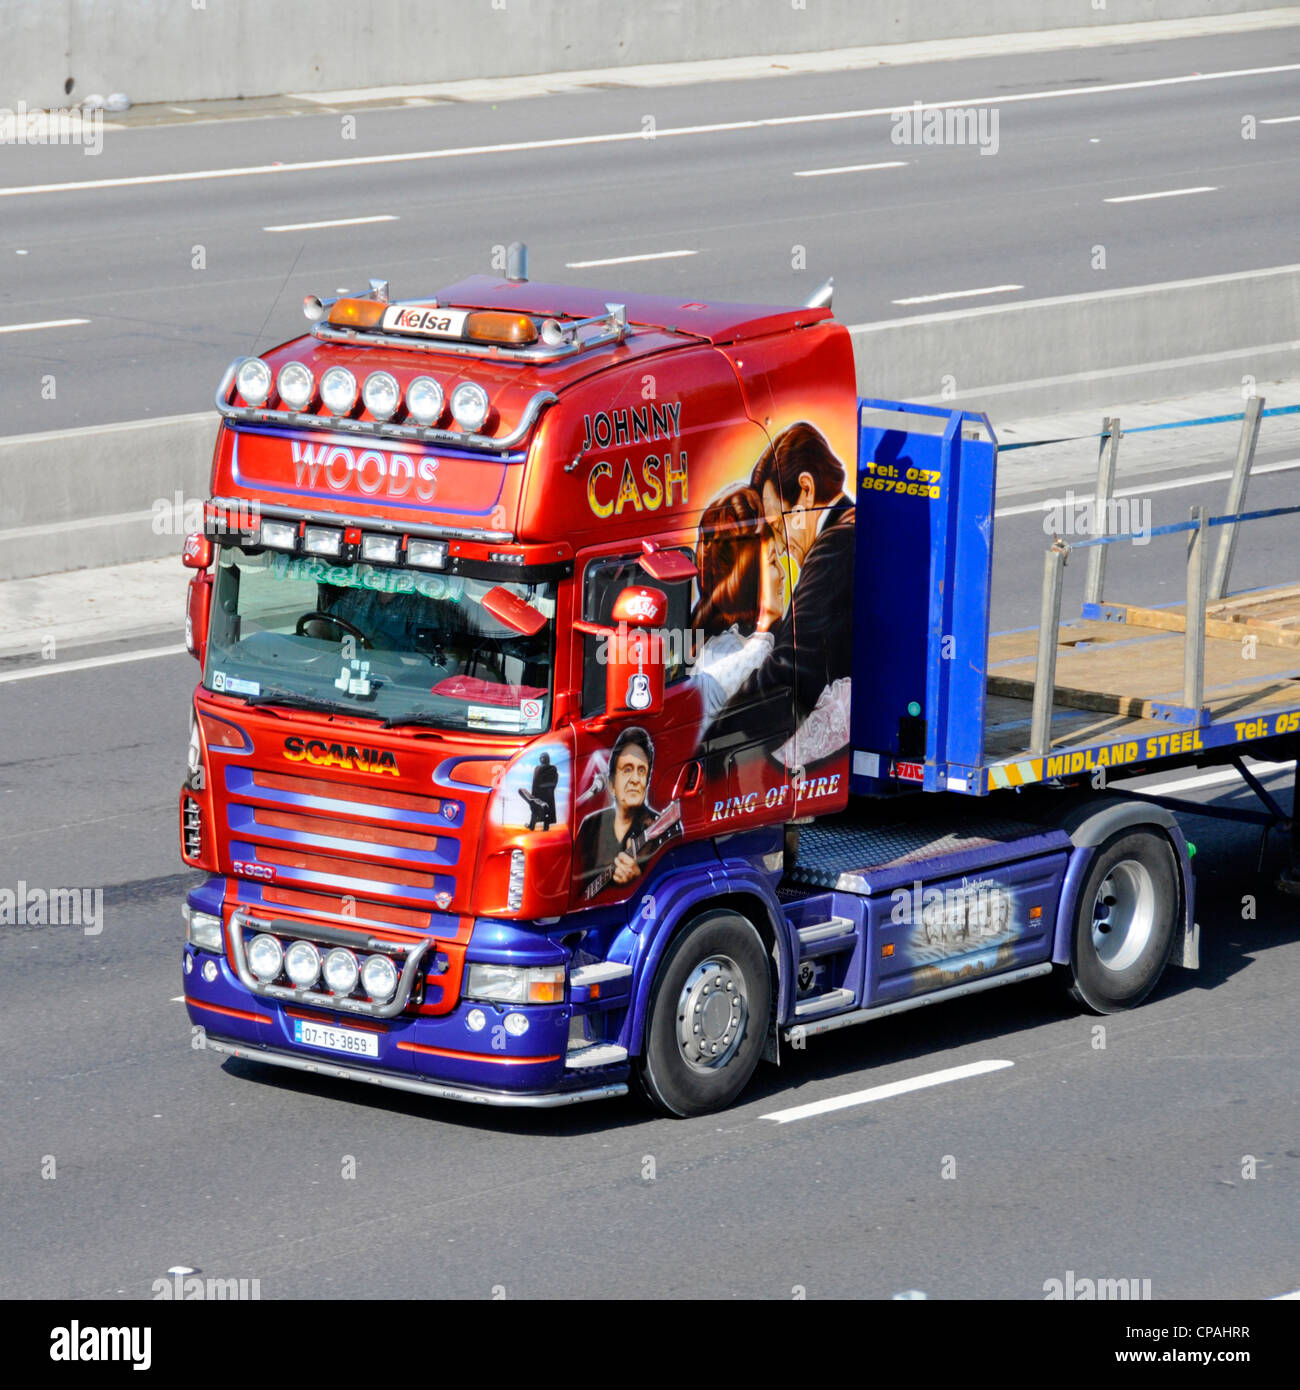 Grafica grafica del veicolo Johnny Cash Truck Vista frontale laterale del trattore semi-cabina Scania e rimorchio a pianale lungo la strada autostradale del Regno Unito Inghilterra Foto Stock